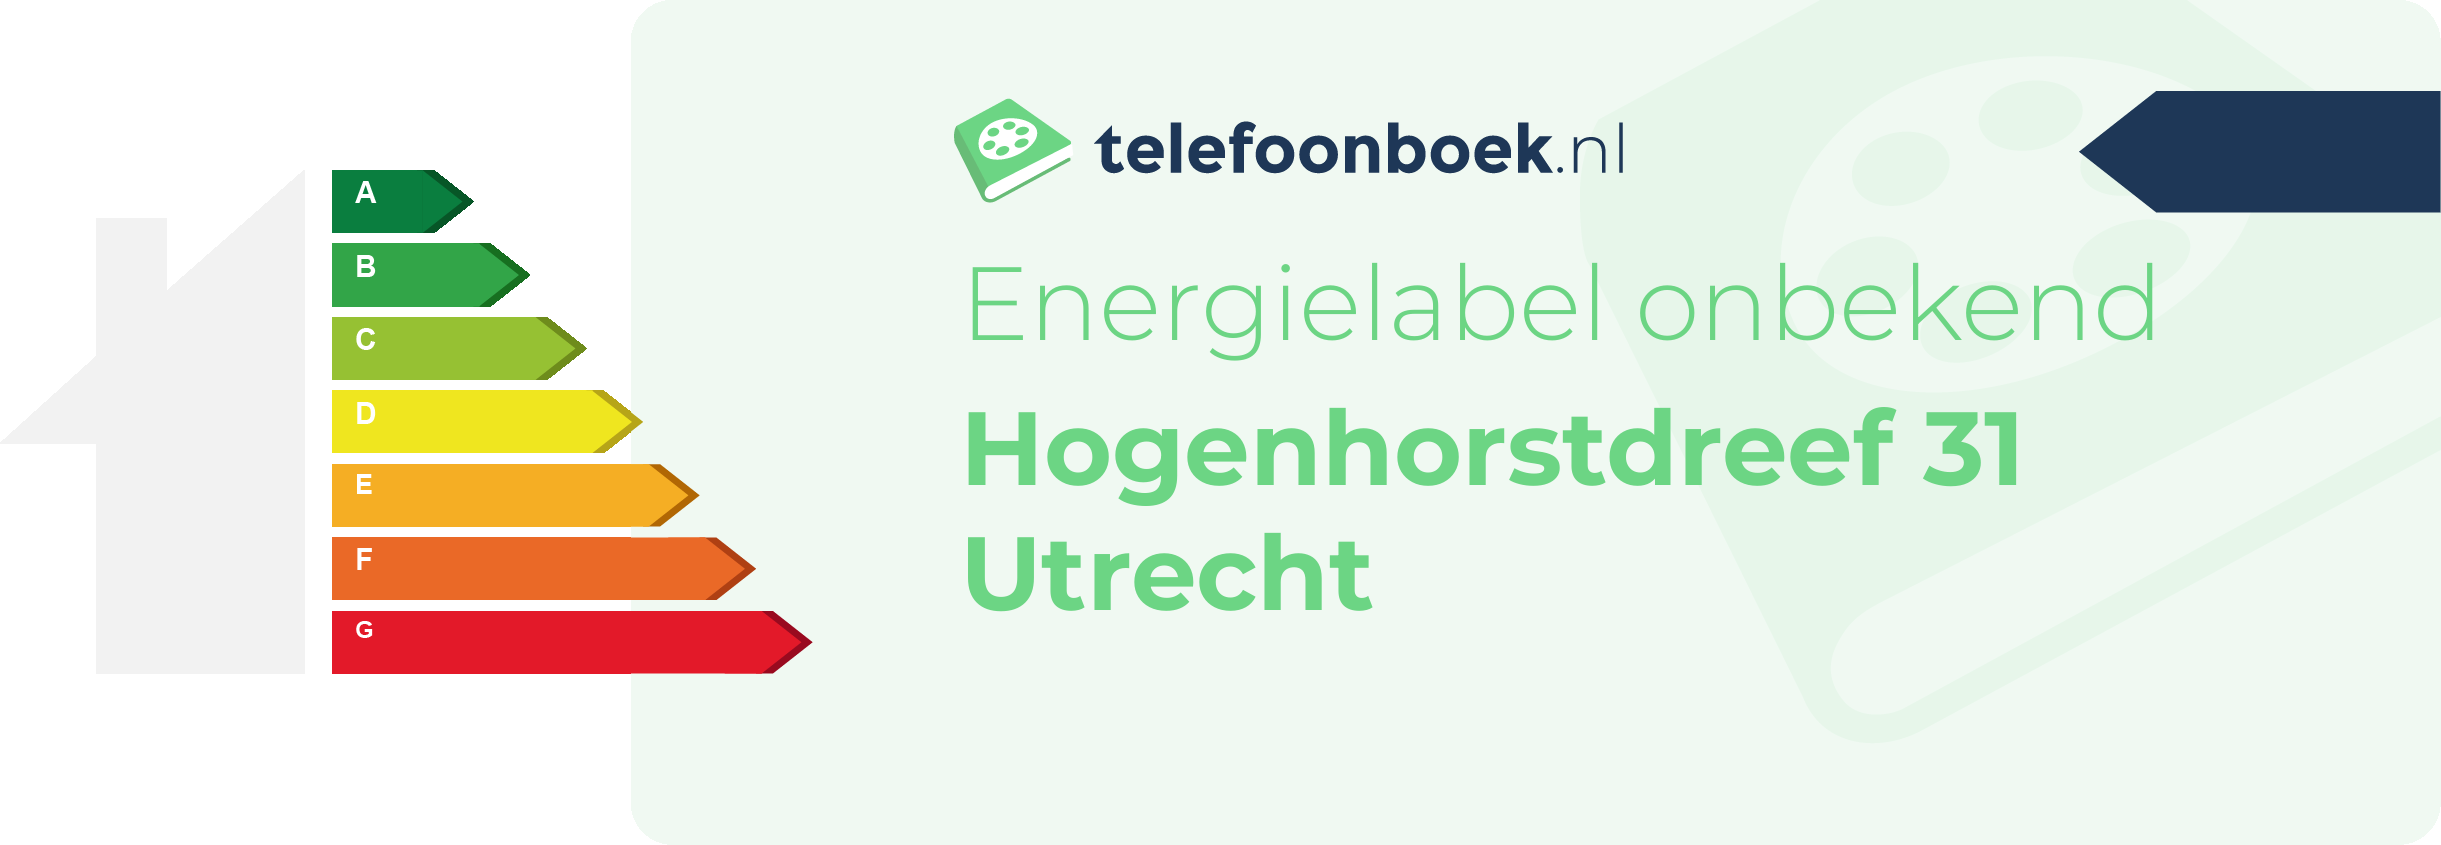 Energielabel Hogenhorstdreef 31 Utrecht